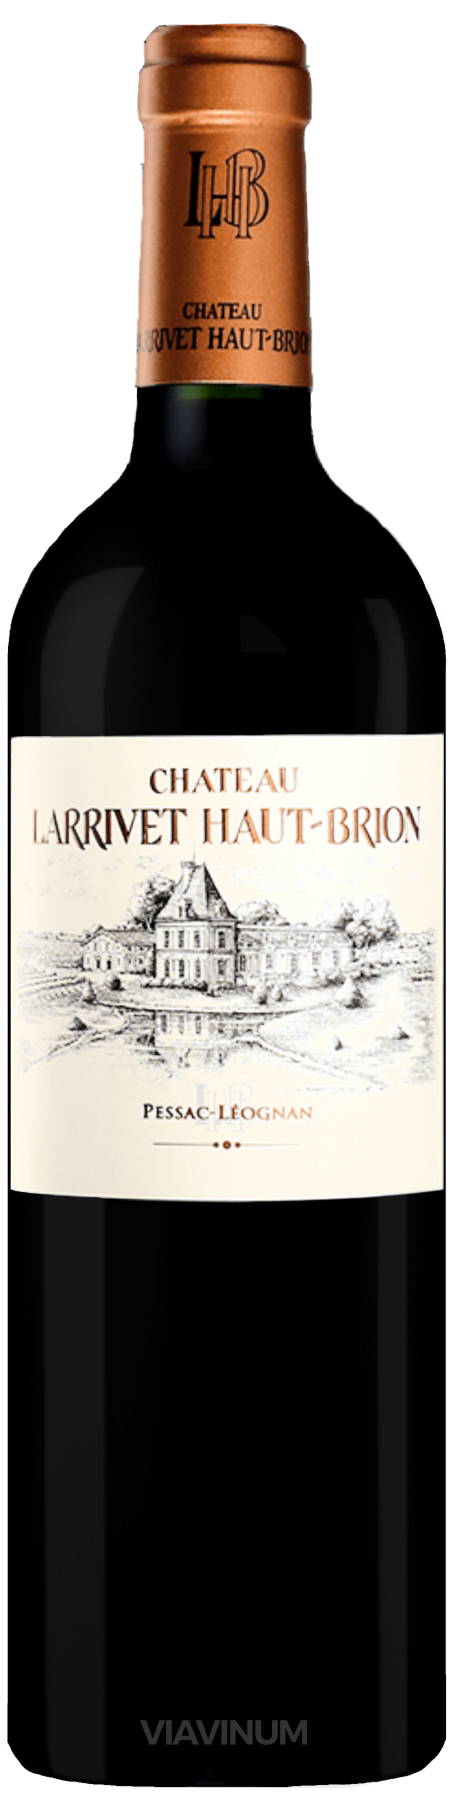 Chateau Larrivet Haut-Brion 2018, Pessac Leognan (Magnum)